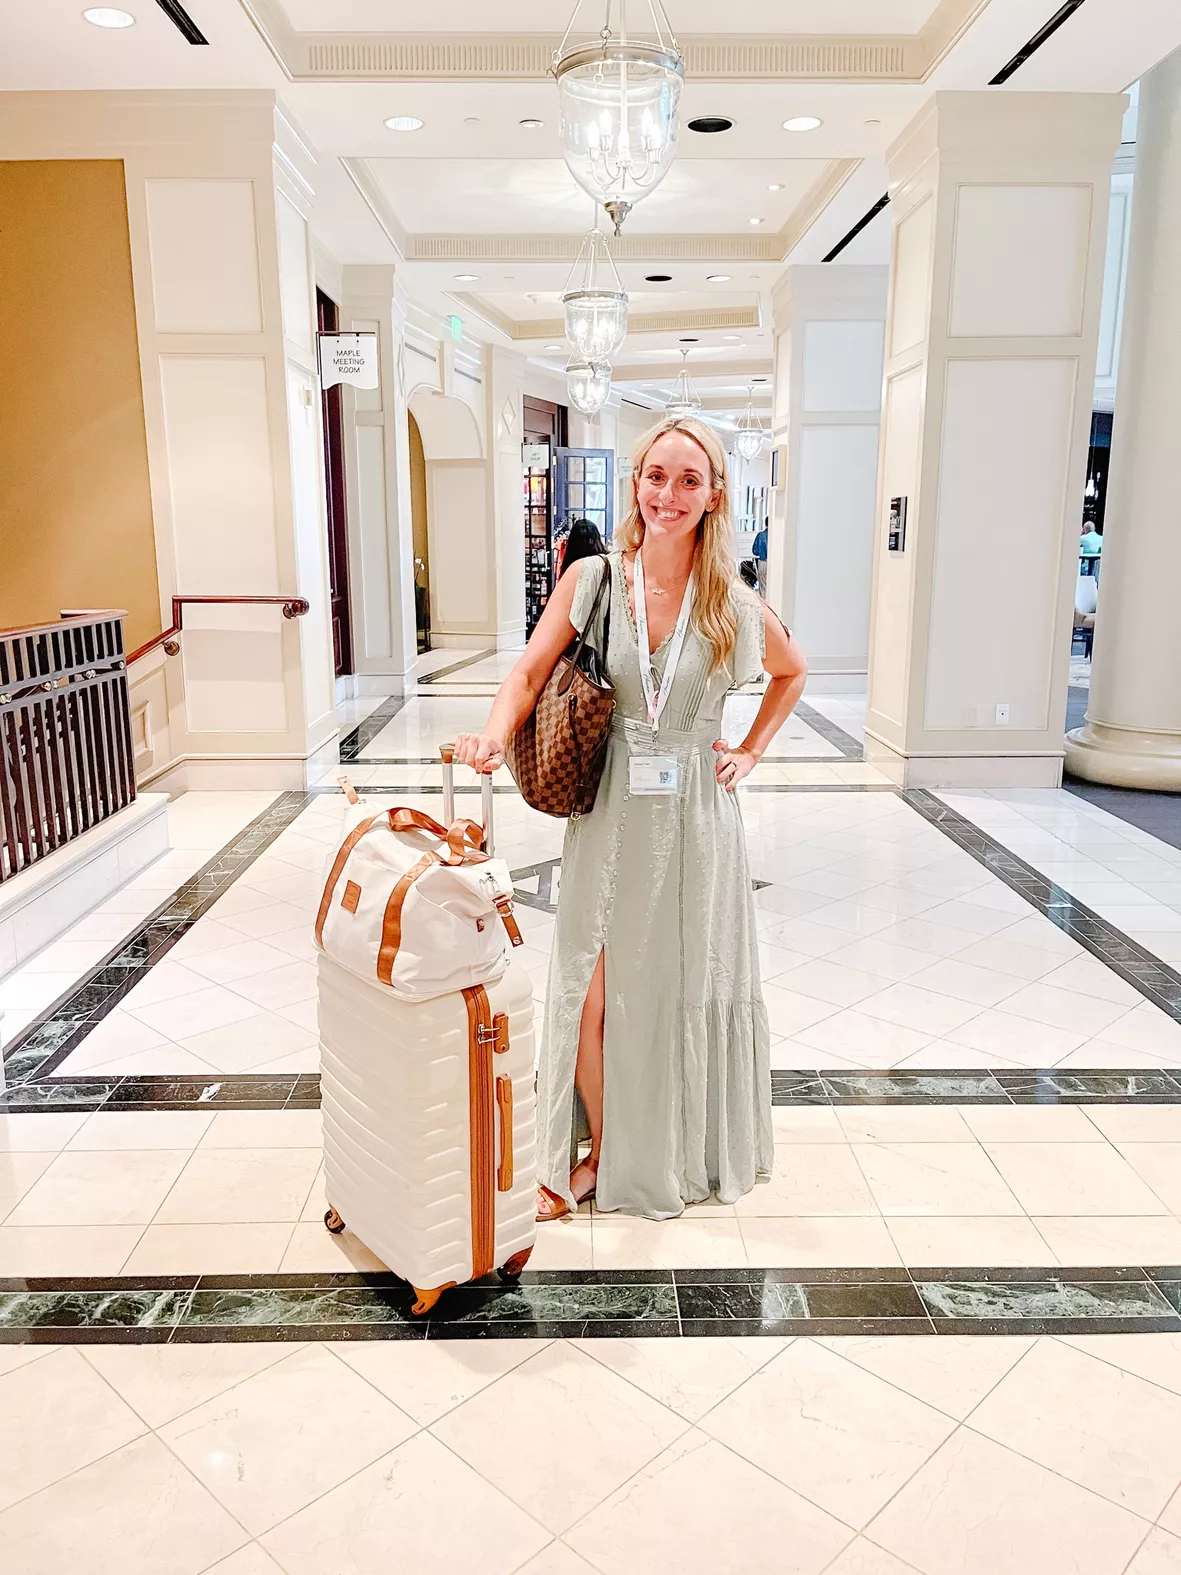 Large Louis Vuitton luggage Set suitcase bag